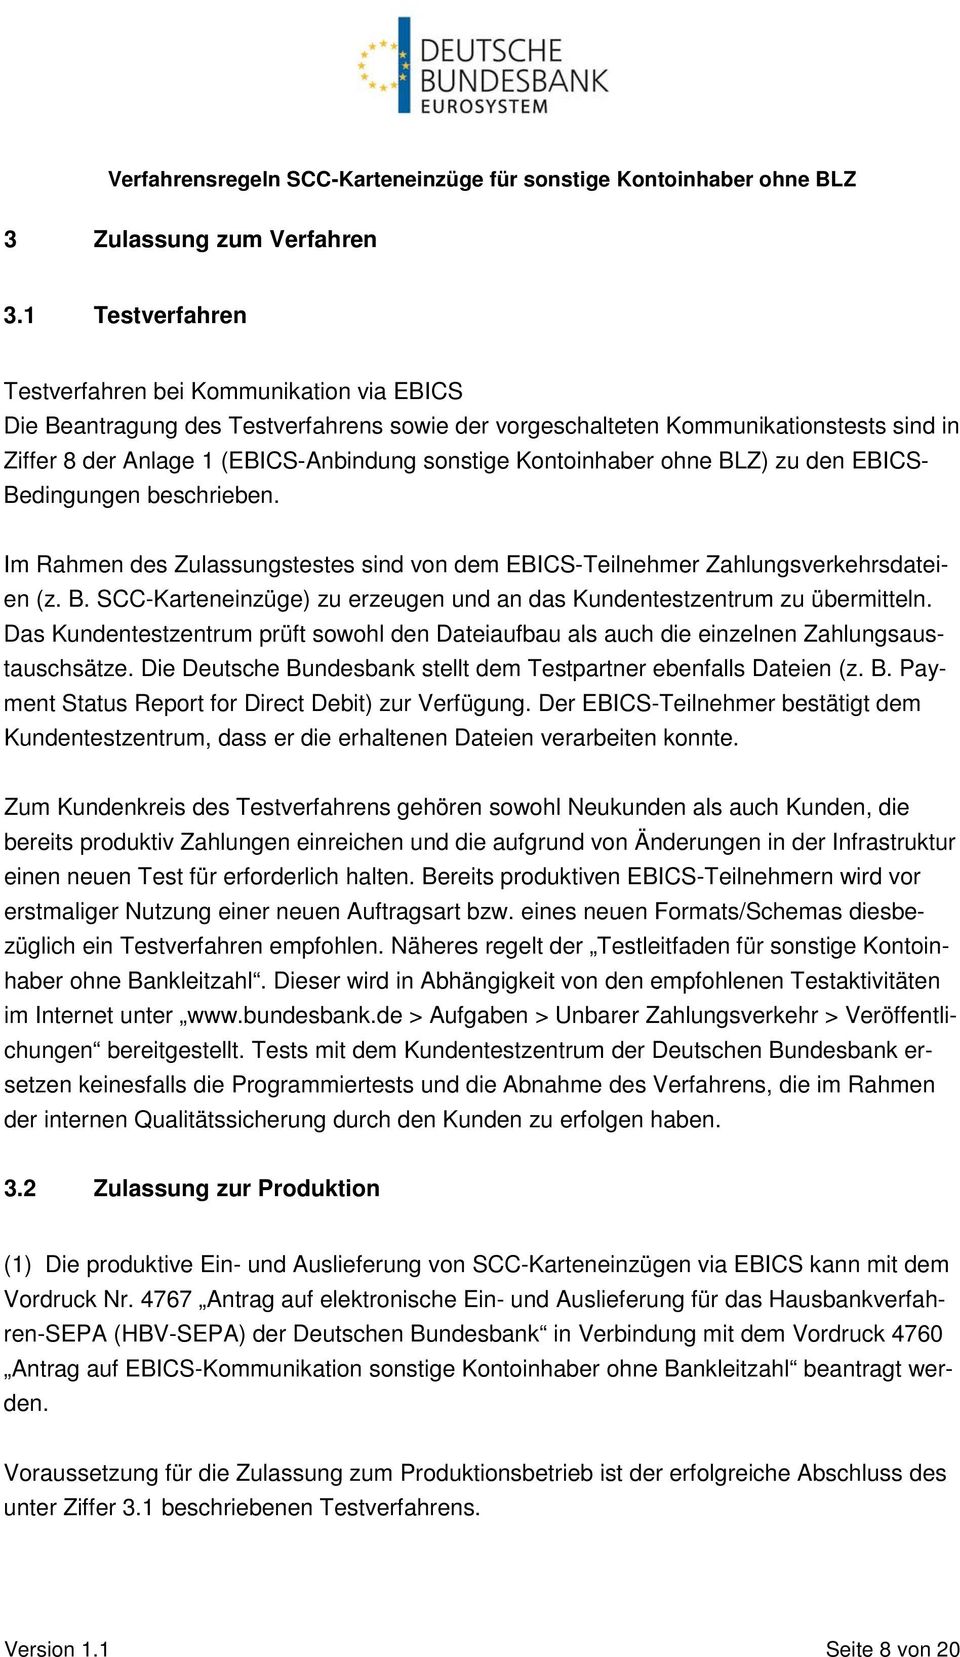 Kontoinhaber ohne BLZ) zu den EBICS- Bedingungen beschrieben. Im Rahmen des Zulassungstestes sind von dem EBICS-Teilnehmer Zahlungsverkehrsdateien (z. B. SCC-Karteneinzüge) zu erzeugen und an das Kundentestzentrum zu übermitteln.